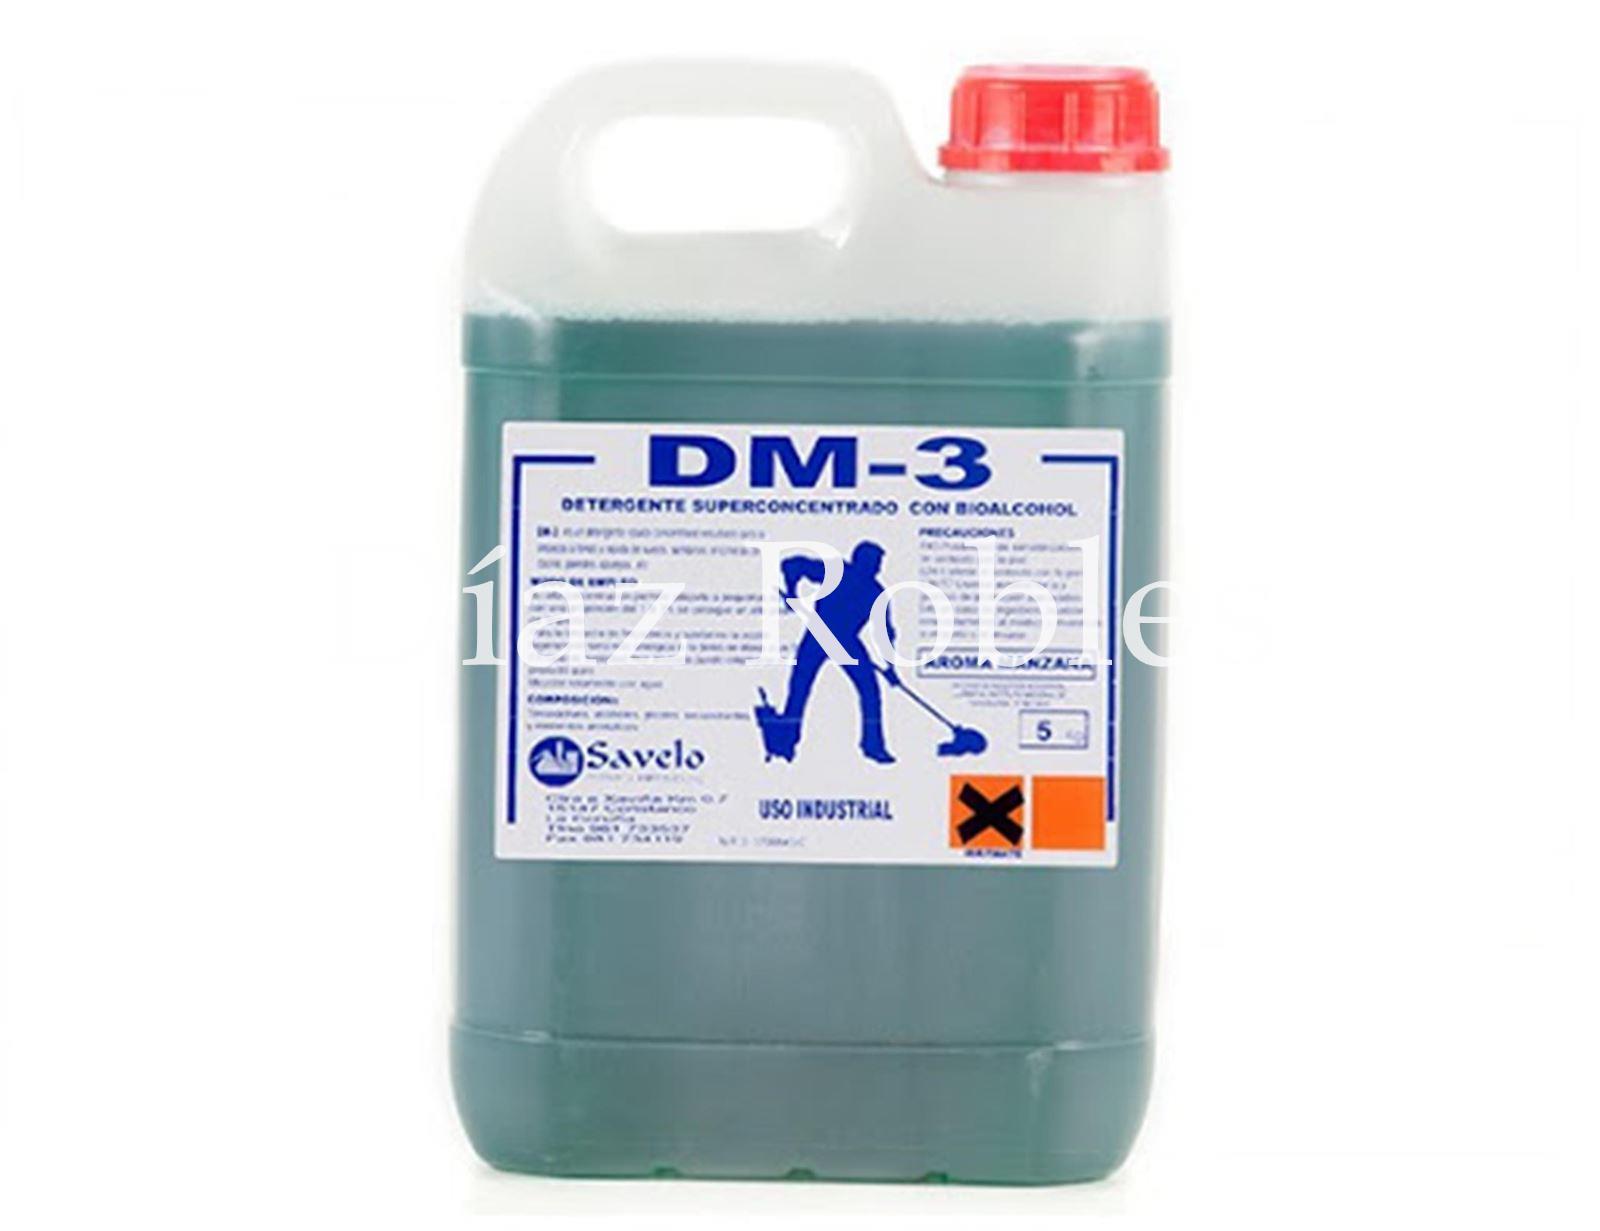 Detergente Fregasuelos DM-3. Garrafas de 5l., 10l. y 25l. - Imagen 1